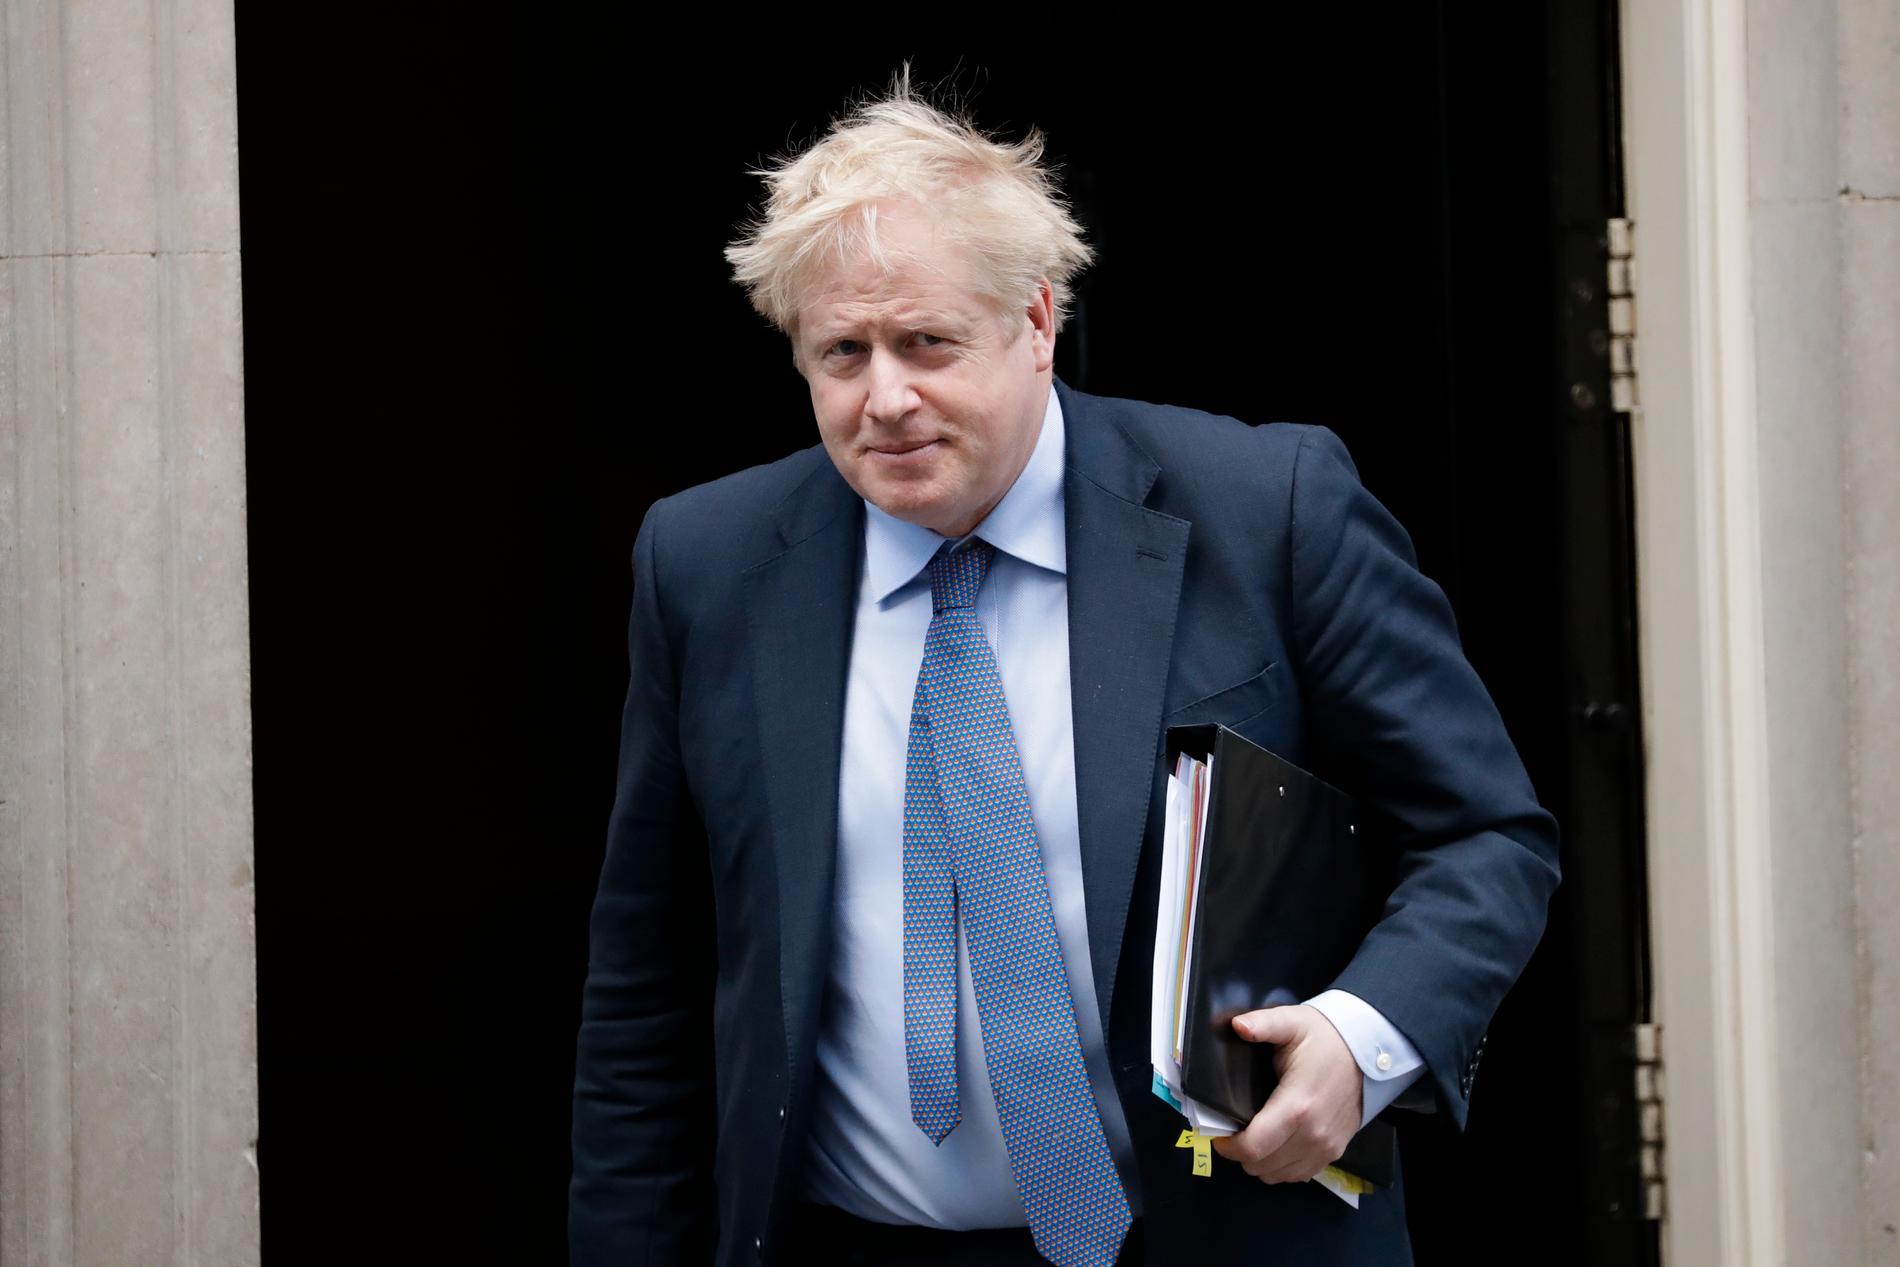  Boris Johnson ska ha krävt att samtliga av finansdepartementets rådgivare skulle sparkas.